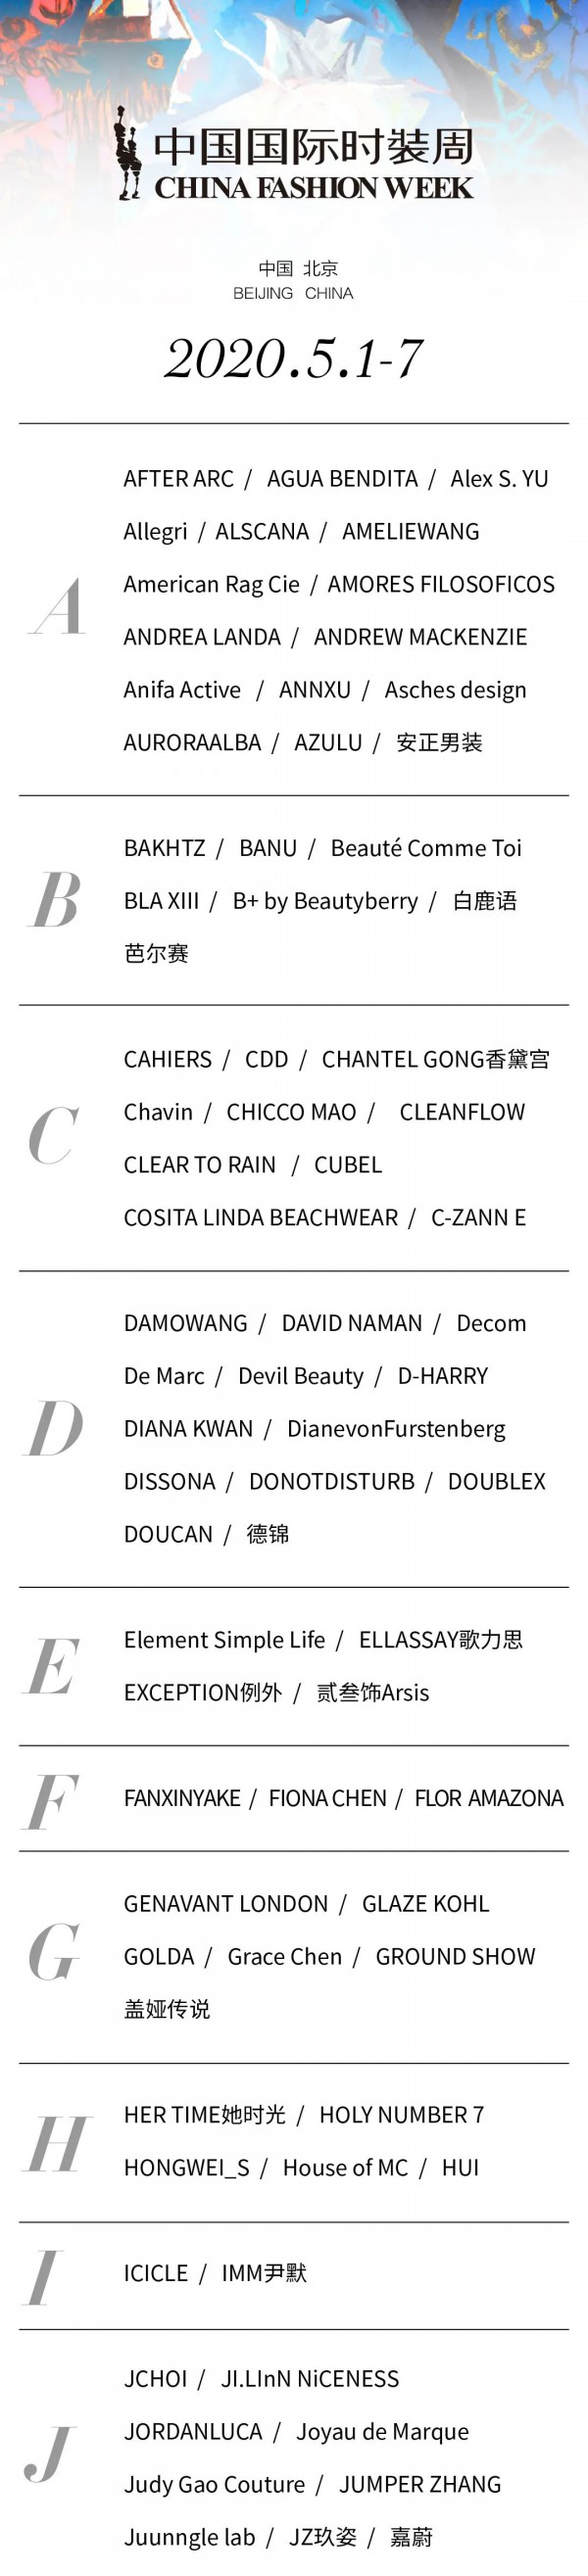 2020中国国际时装周发布品牌时间预览